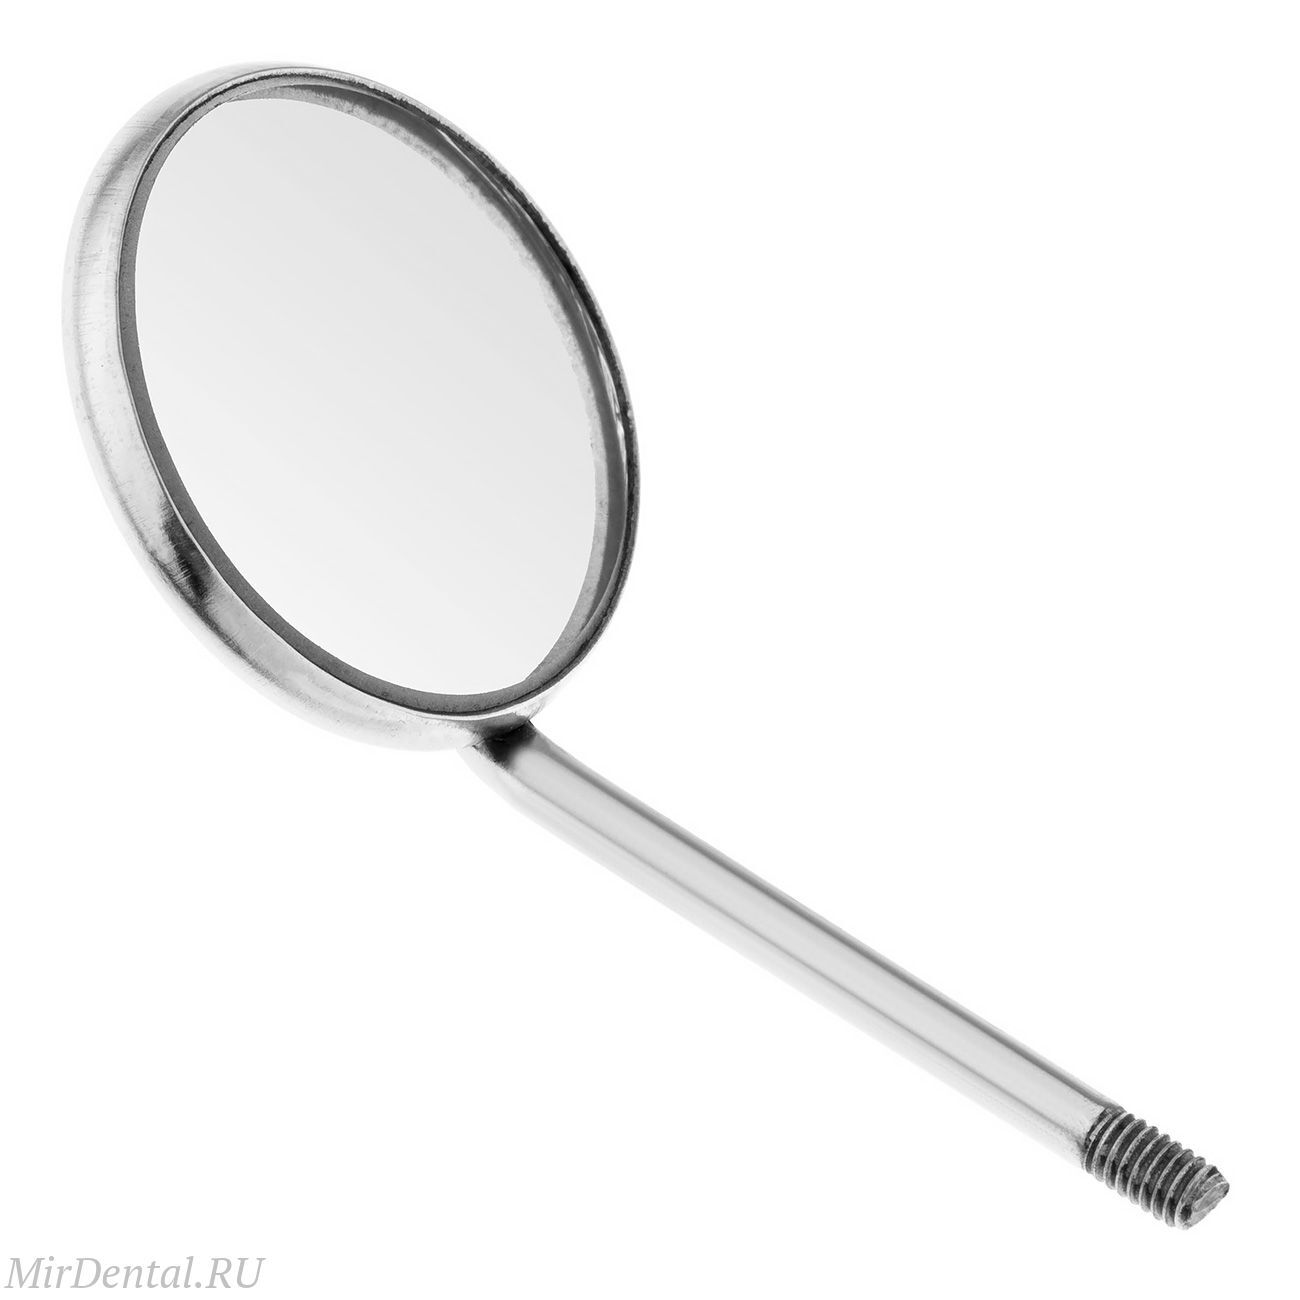 Зеркало стоматологическое №4, 22 мм (упак 12 шт), 23-1*